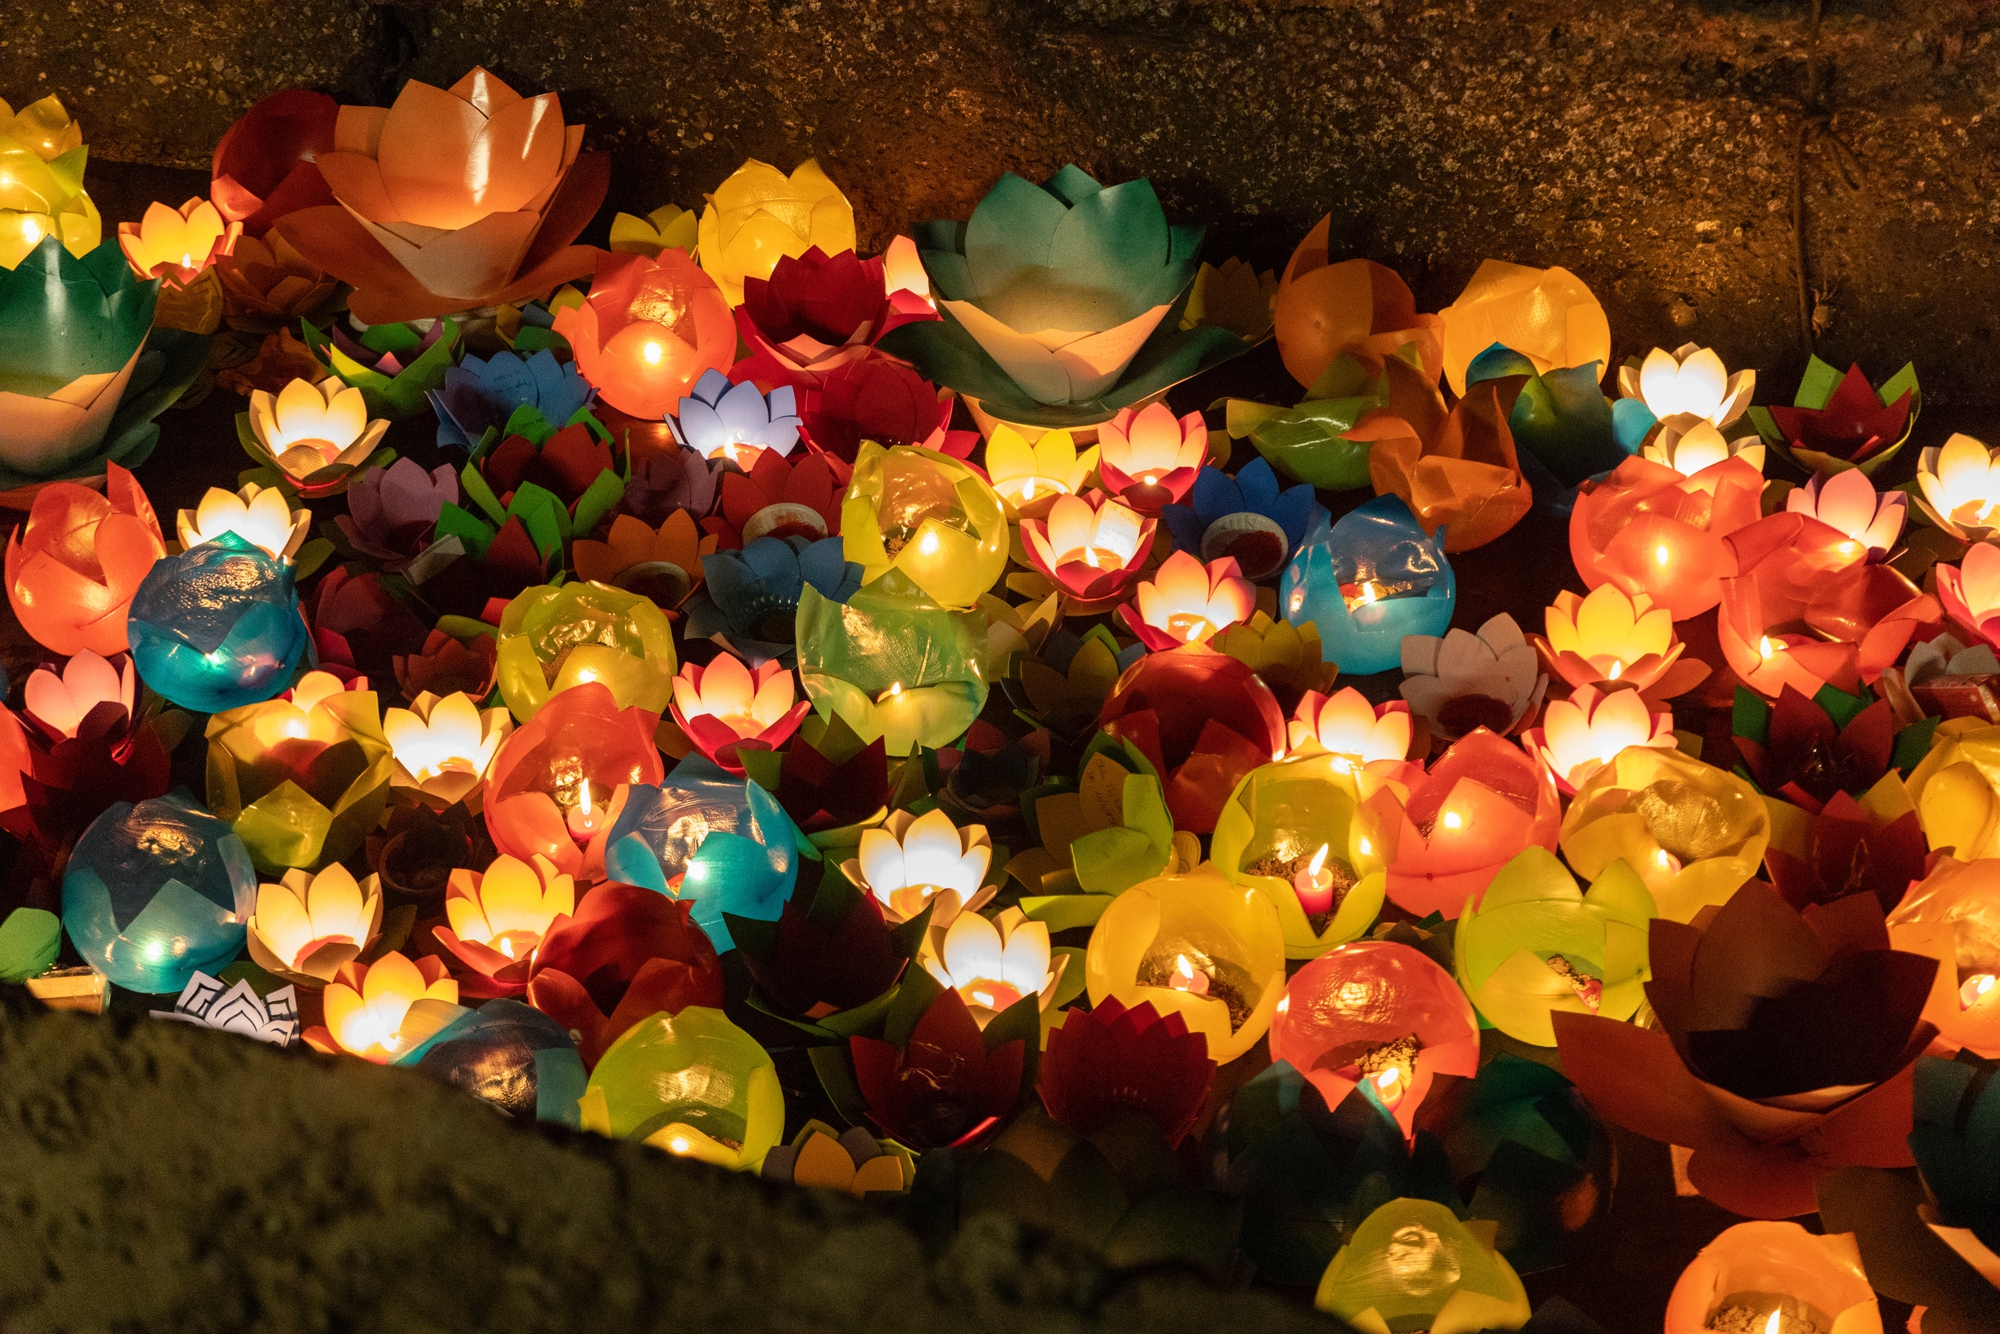 Người dân miền Tây háo hức đi thả đèn ở lễ hội lớn nhất Hà Tiên  - Ảnh 5.